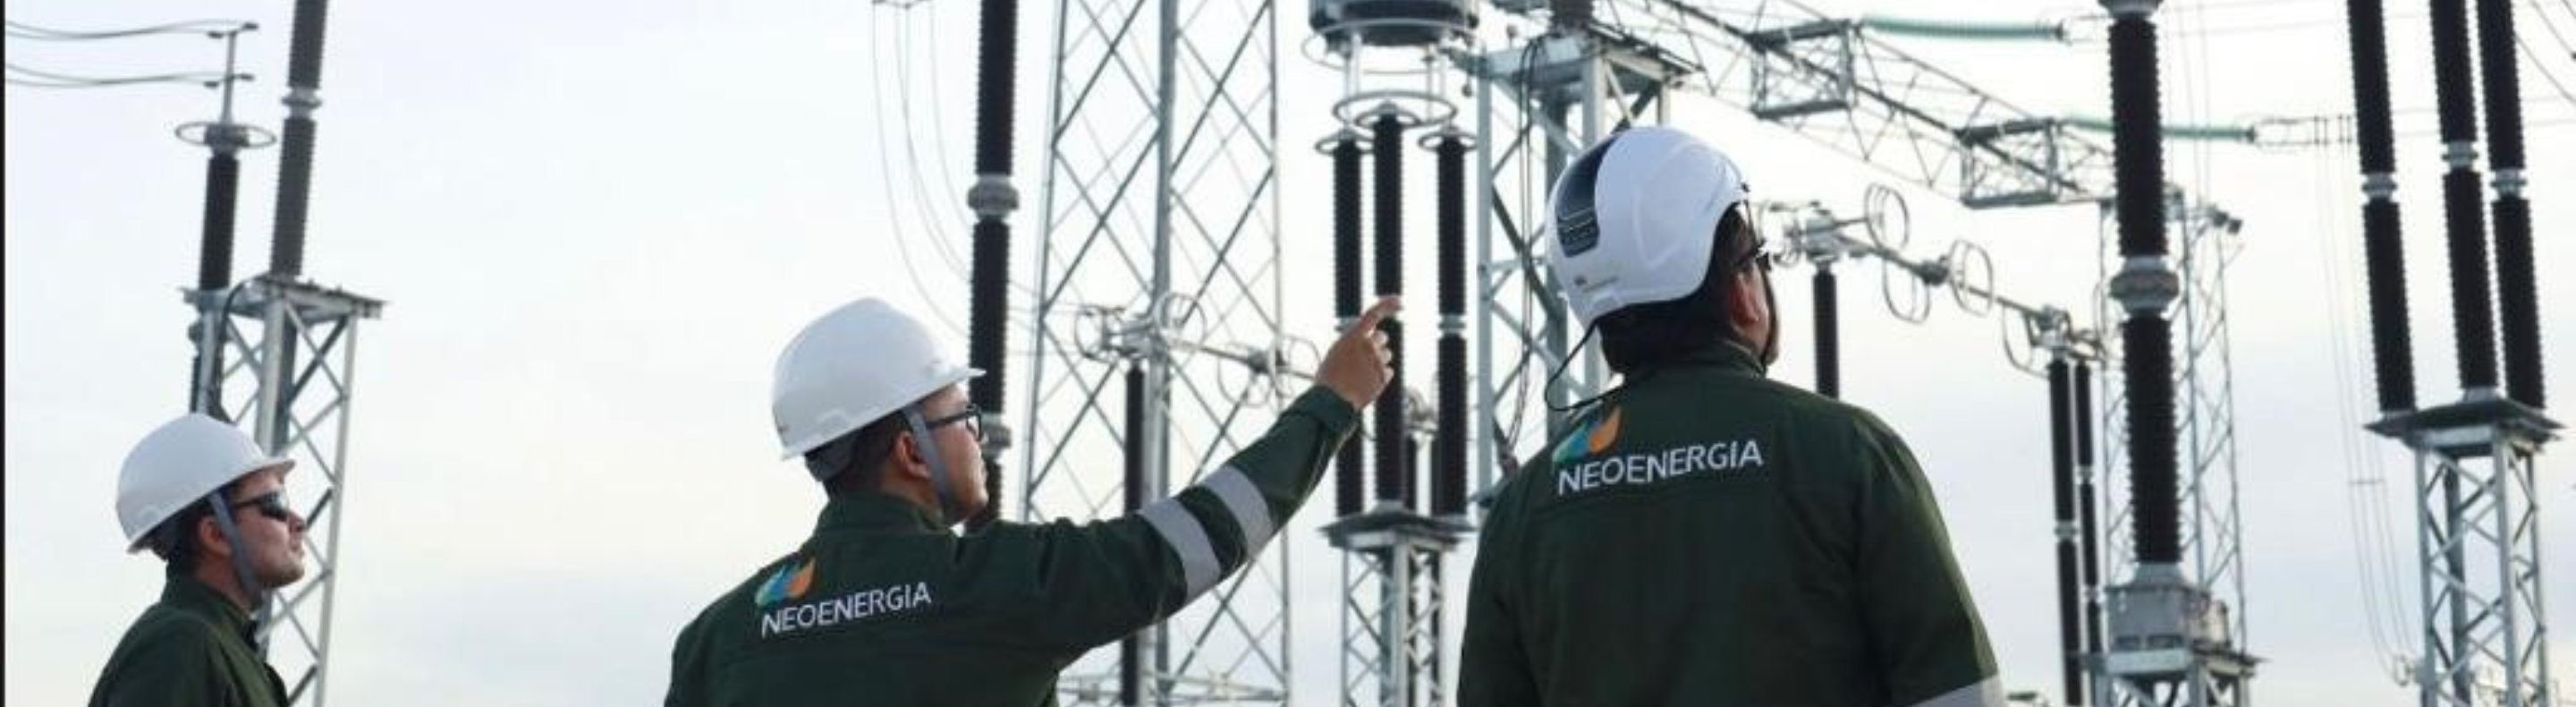 Imagem mostra três homens vestindo macacões verde com a inscrição Neoenergia. Eles usam capacetes brancos e observam instalações elétricas